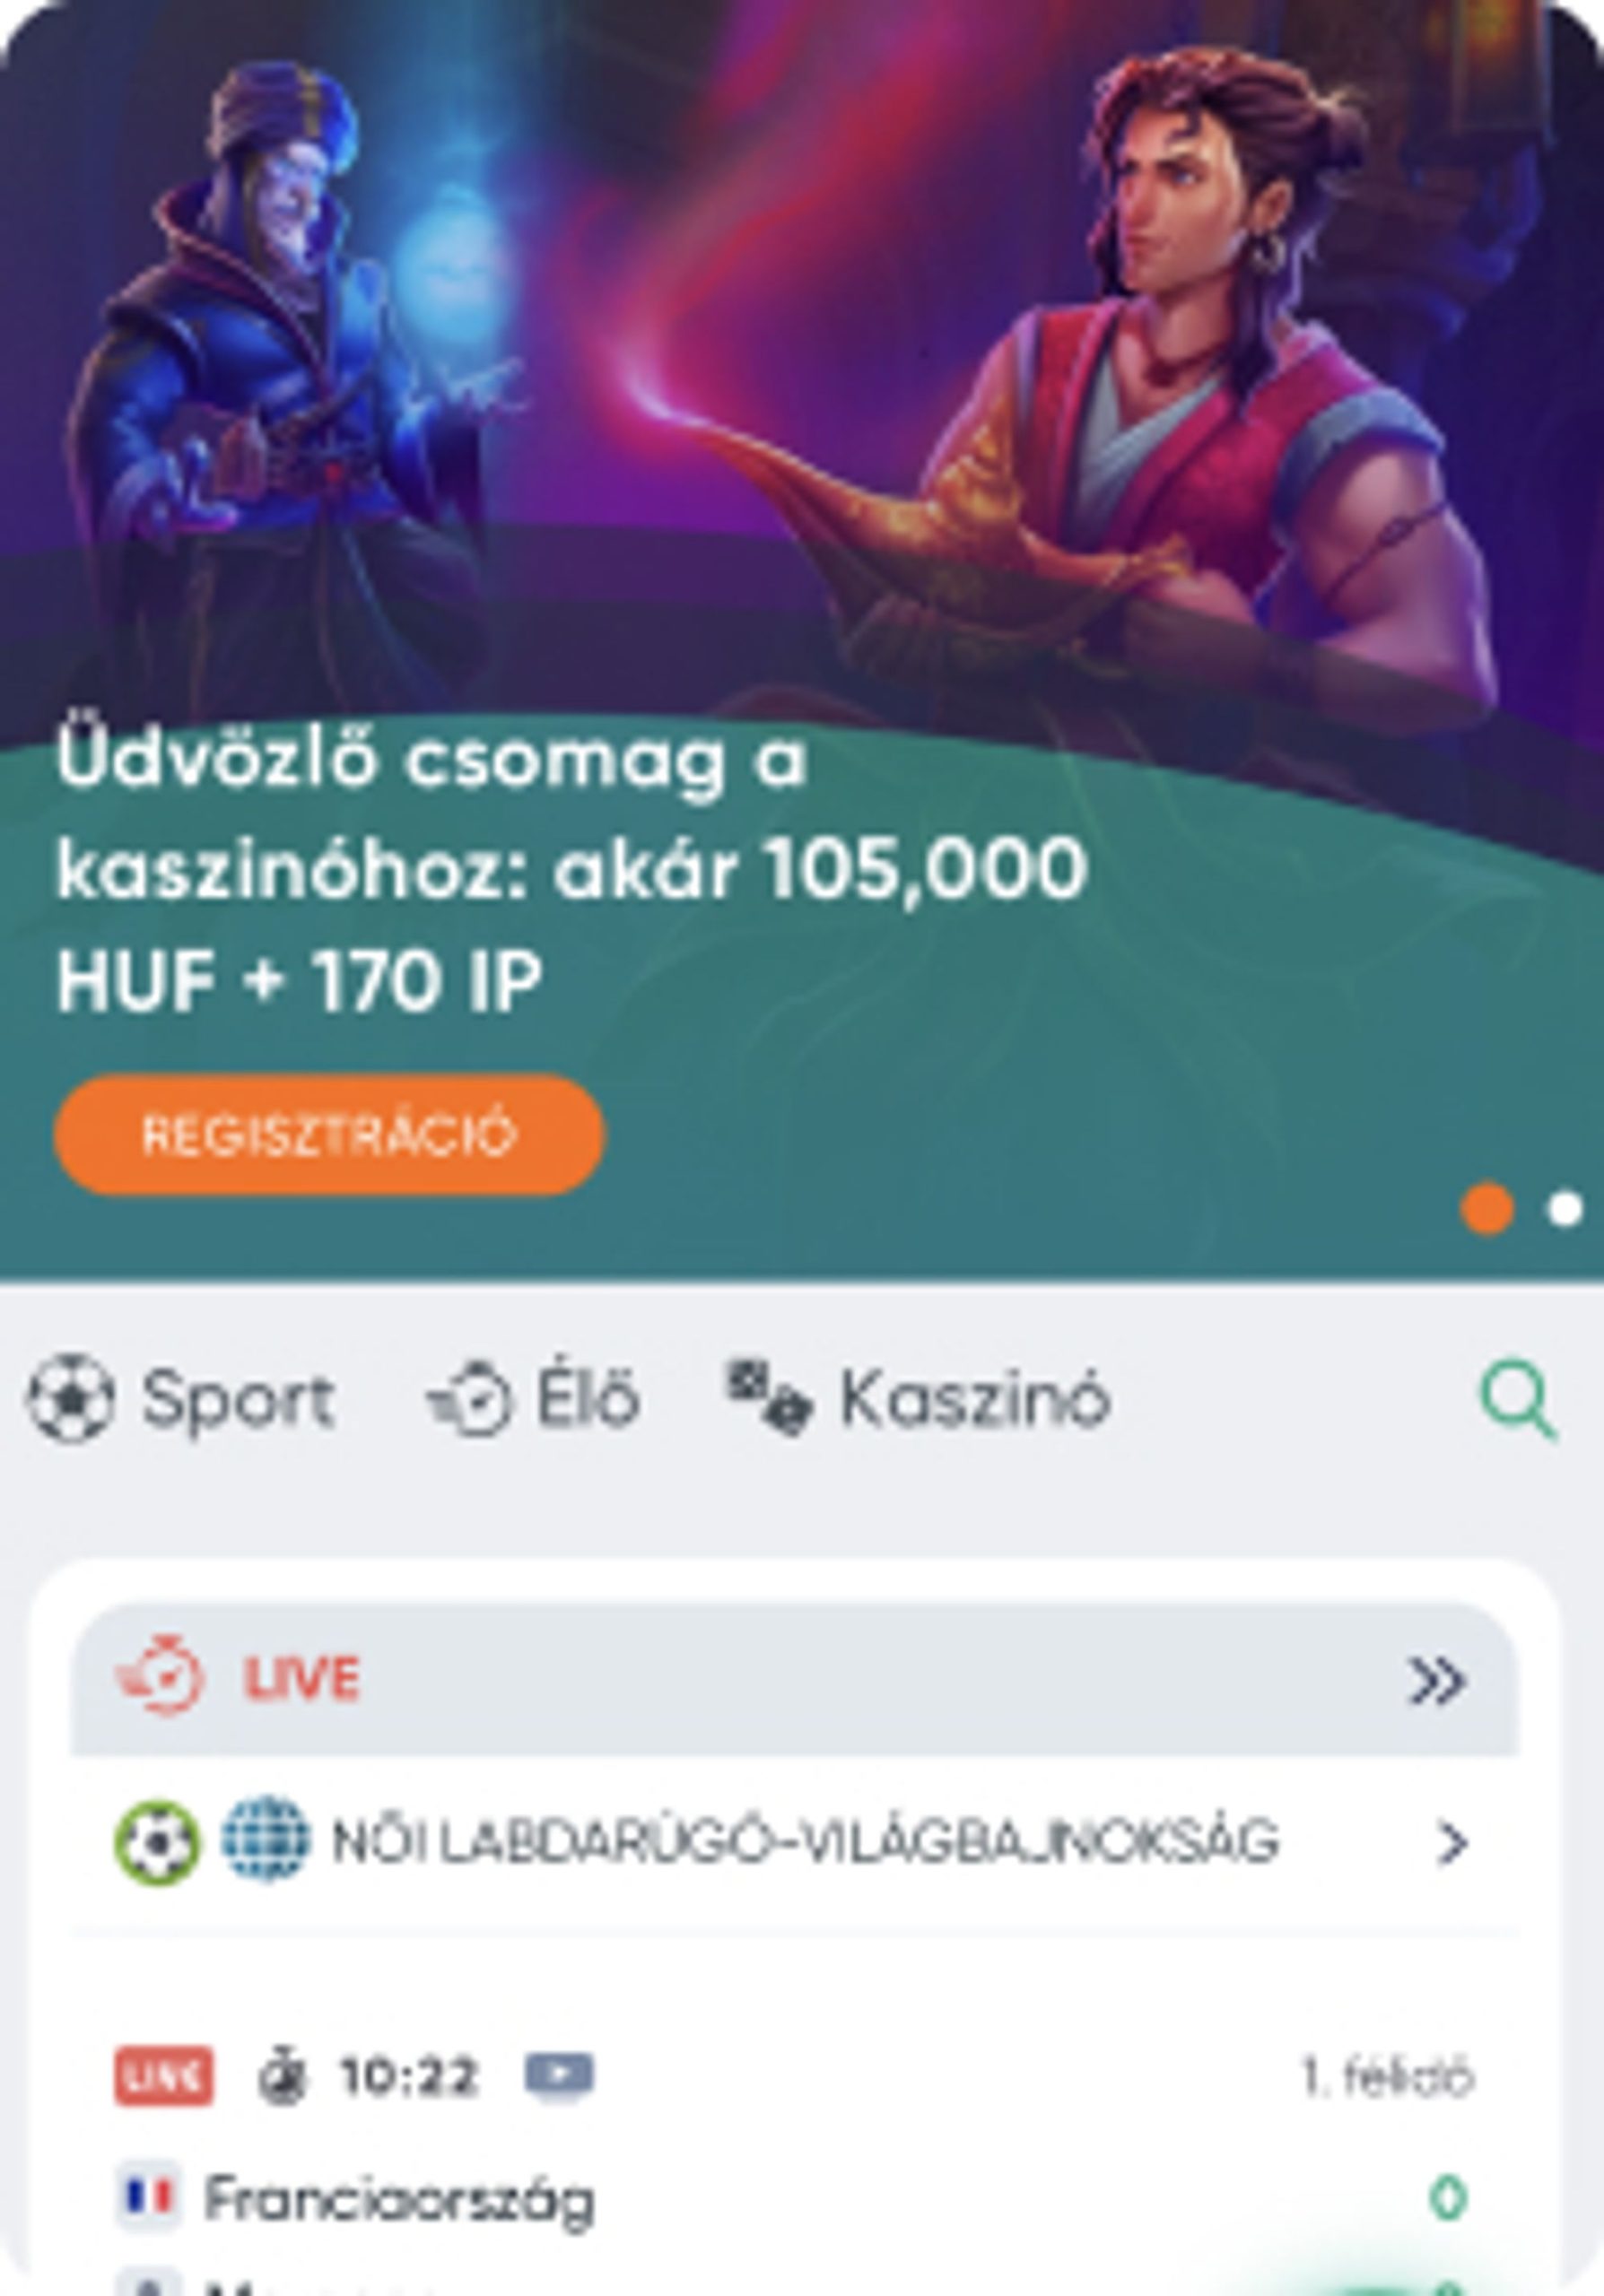 ivibet casino mobile screenshot - welcome bonus